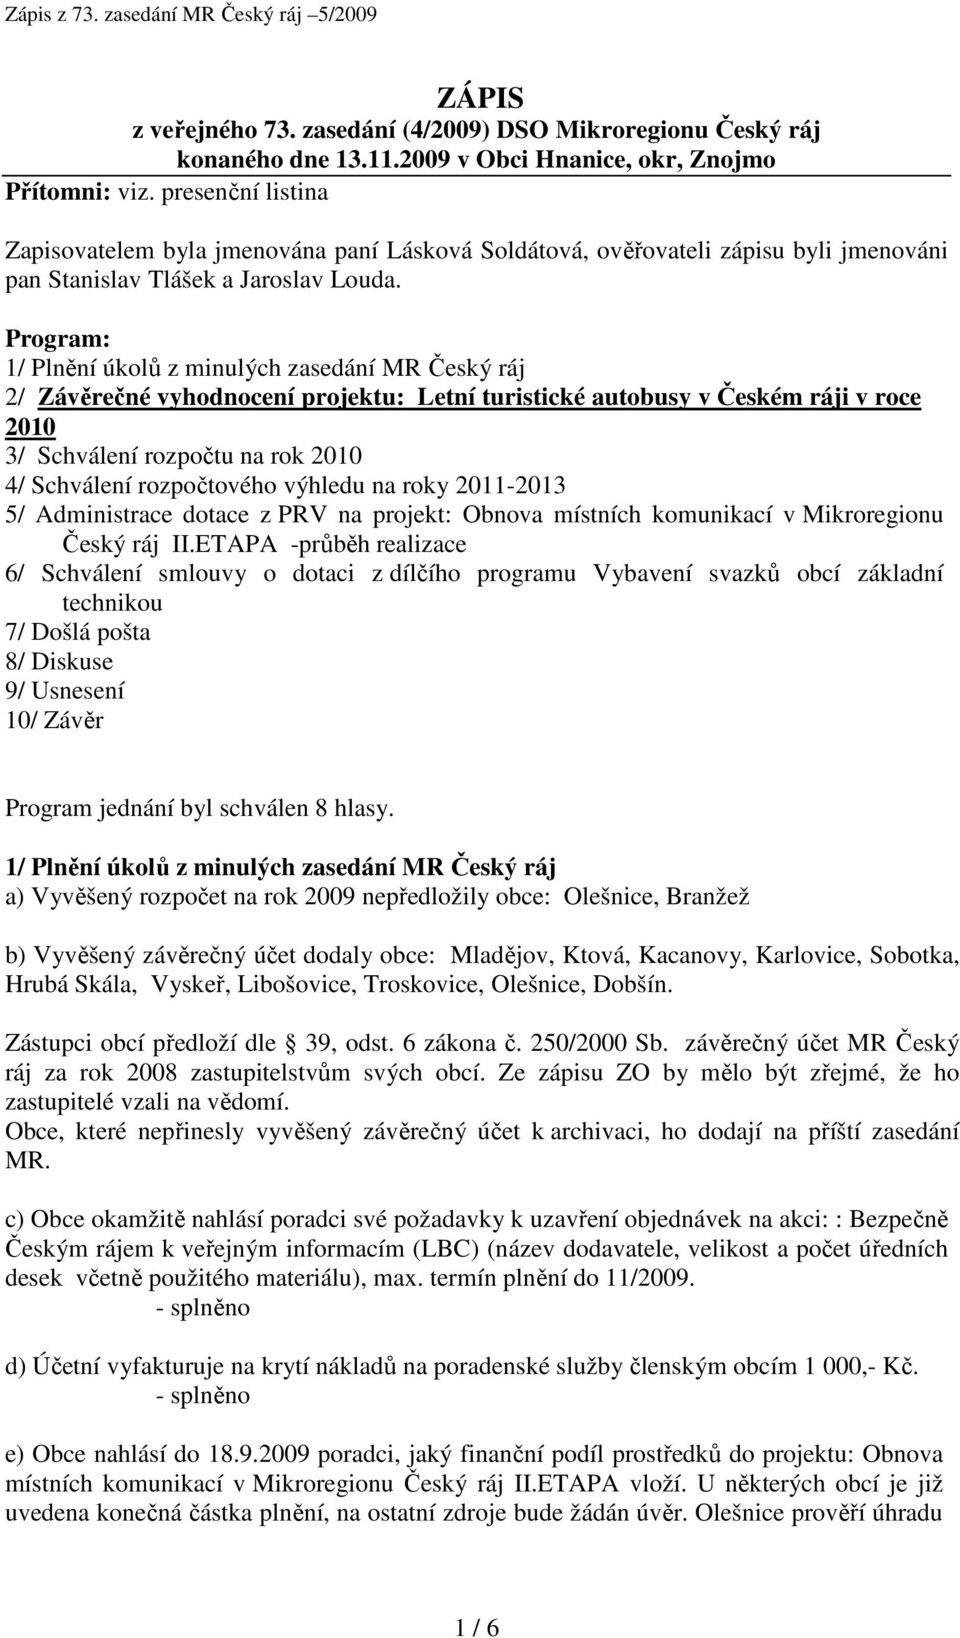 Program: 1/ Plnění úkolů z minulých zasedání MR Český ráj 2/ Závěrečné vyhodnocení projektu: Letní turistické autobusy v Českém ráji v roce 2010 3/ Schválení rozpočtu na rok 2010 4/ Schválení